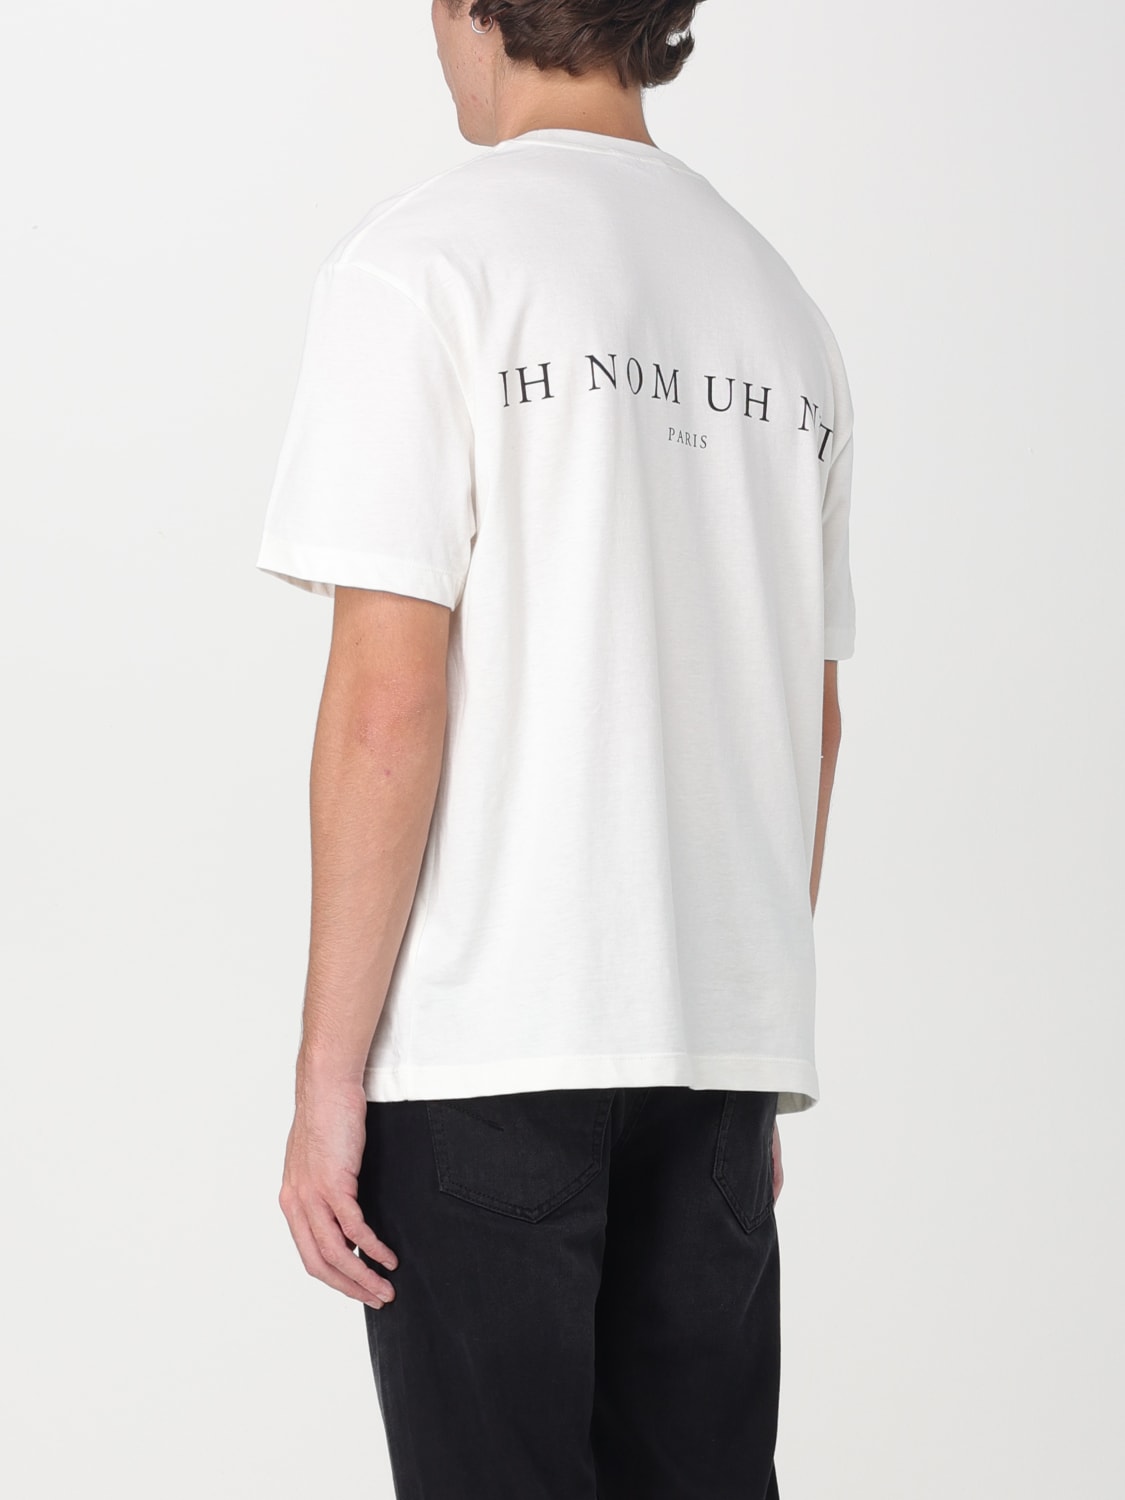 IH NOM UH NIT：Tシャツ メンズ - ホワイト | GIGLIO.COMオンラインの